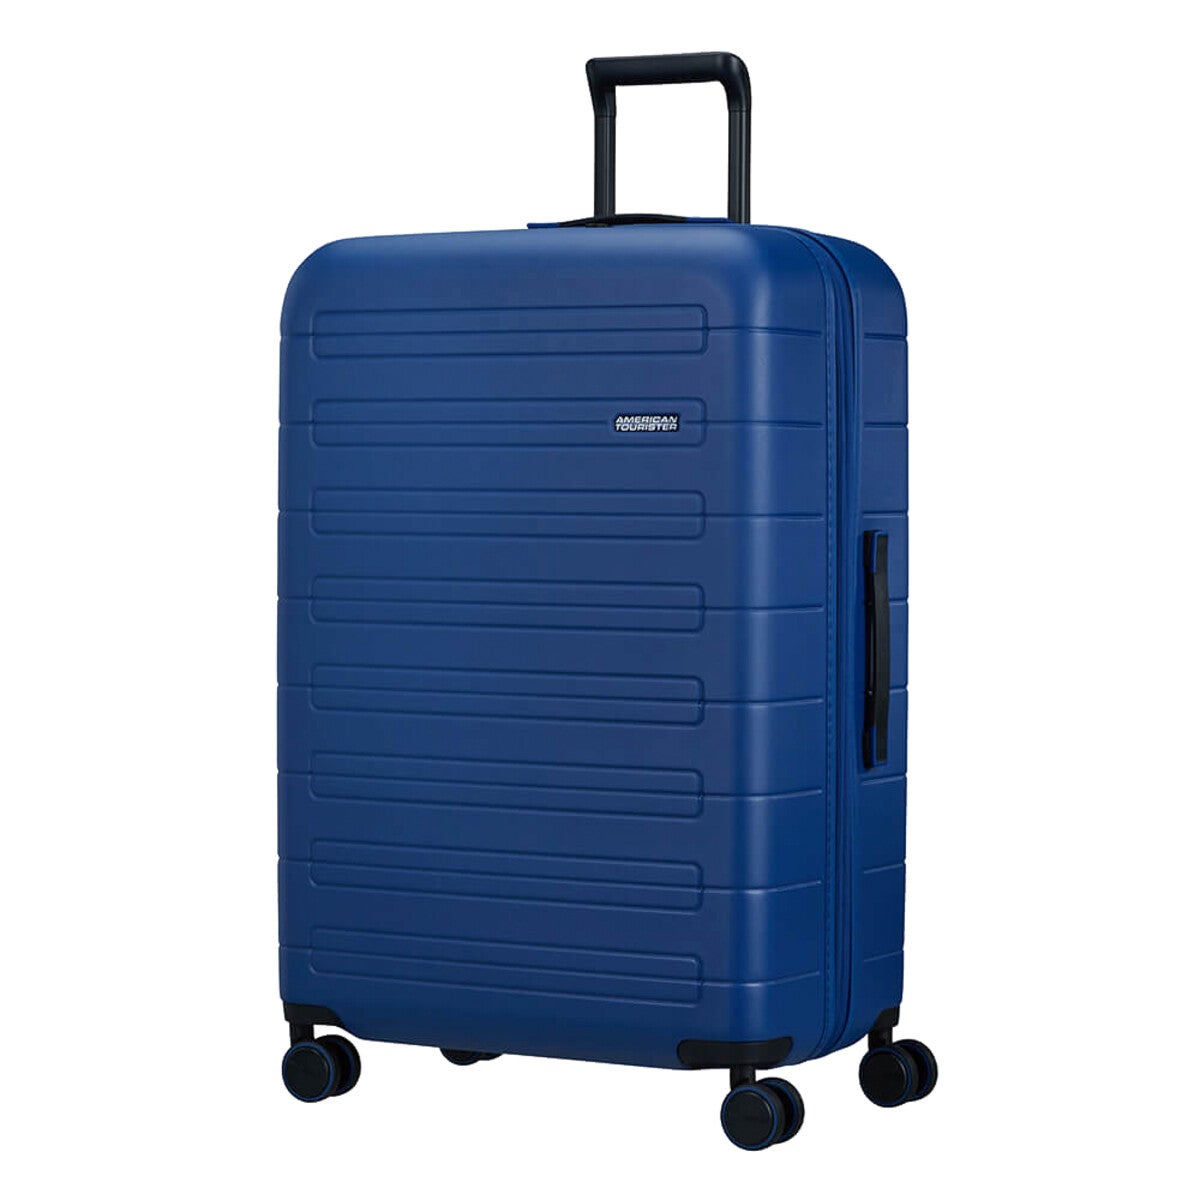 American Tourister stor koffert med 4 hjul, blå